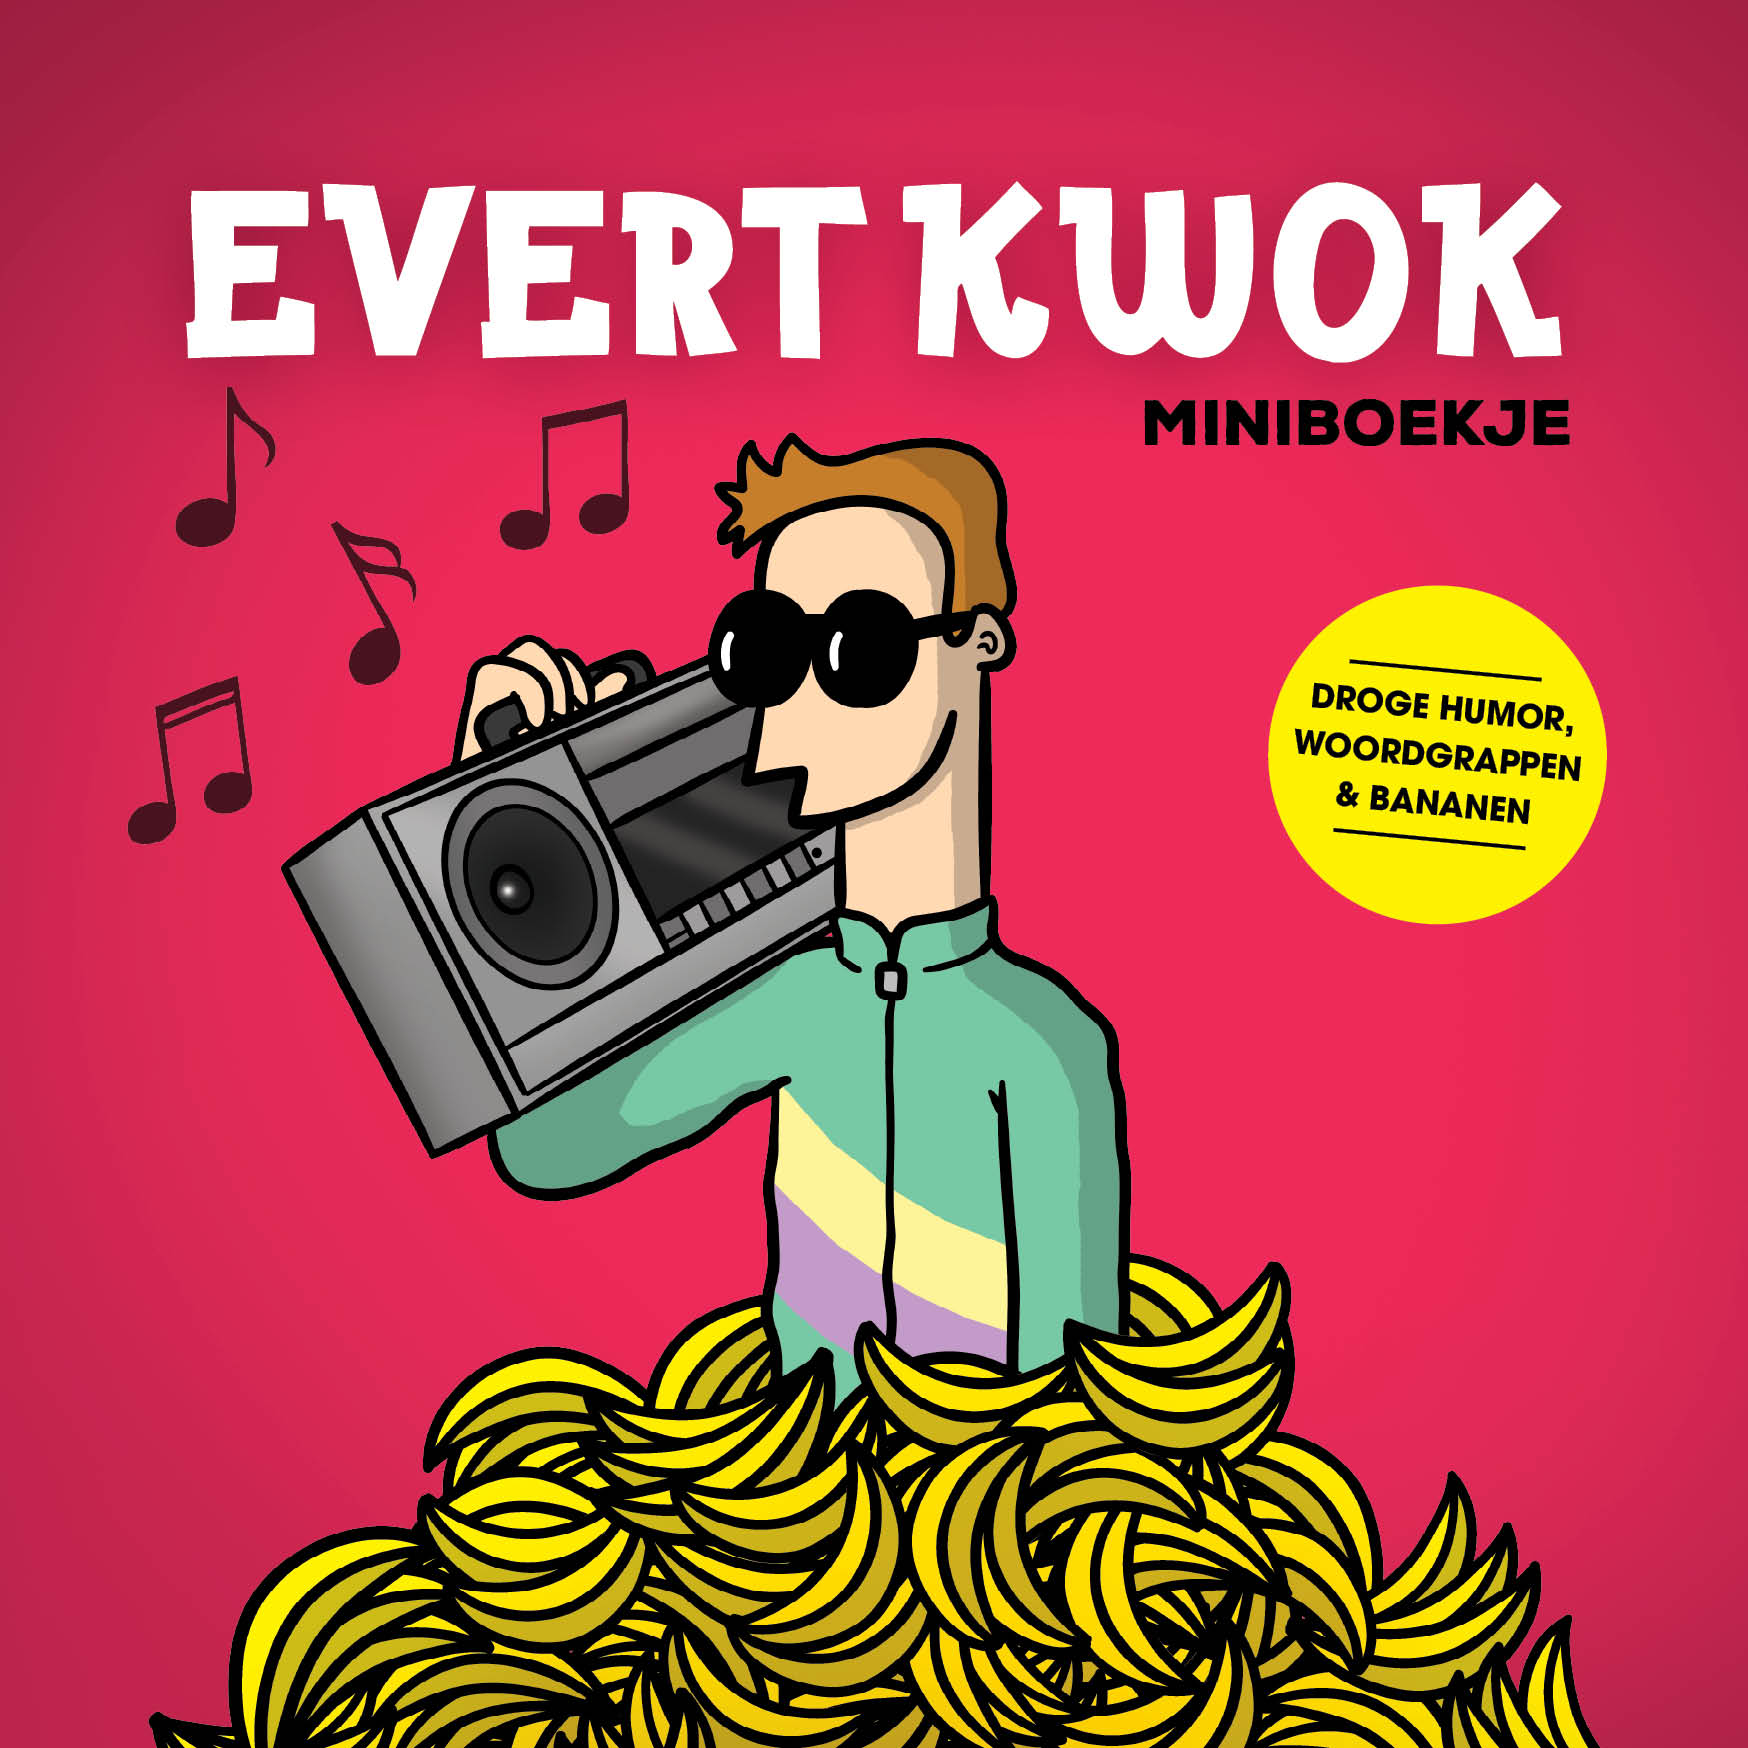 Evert Kwok miniboekje 